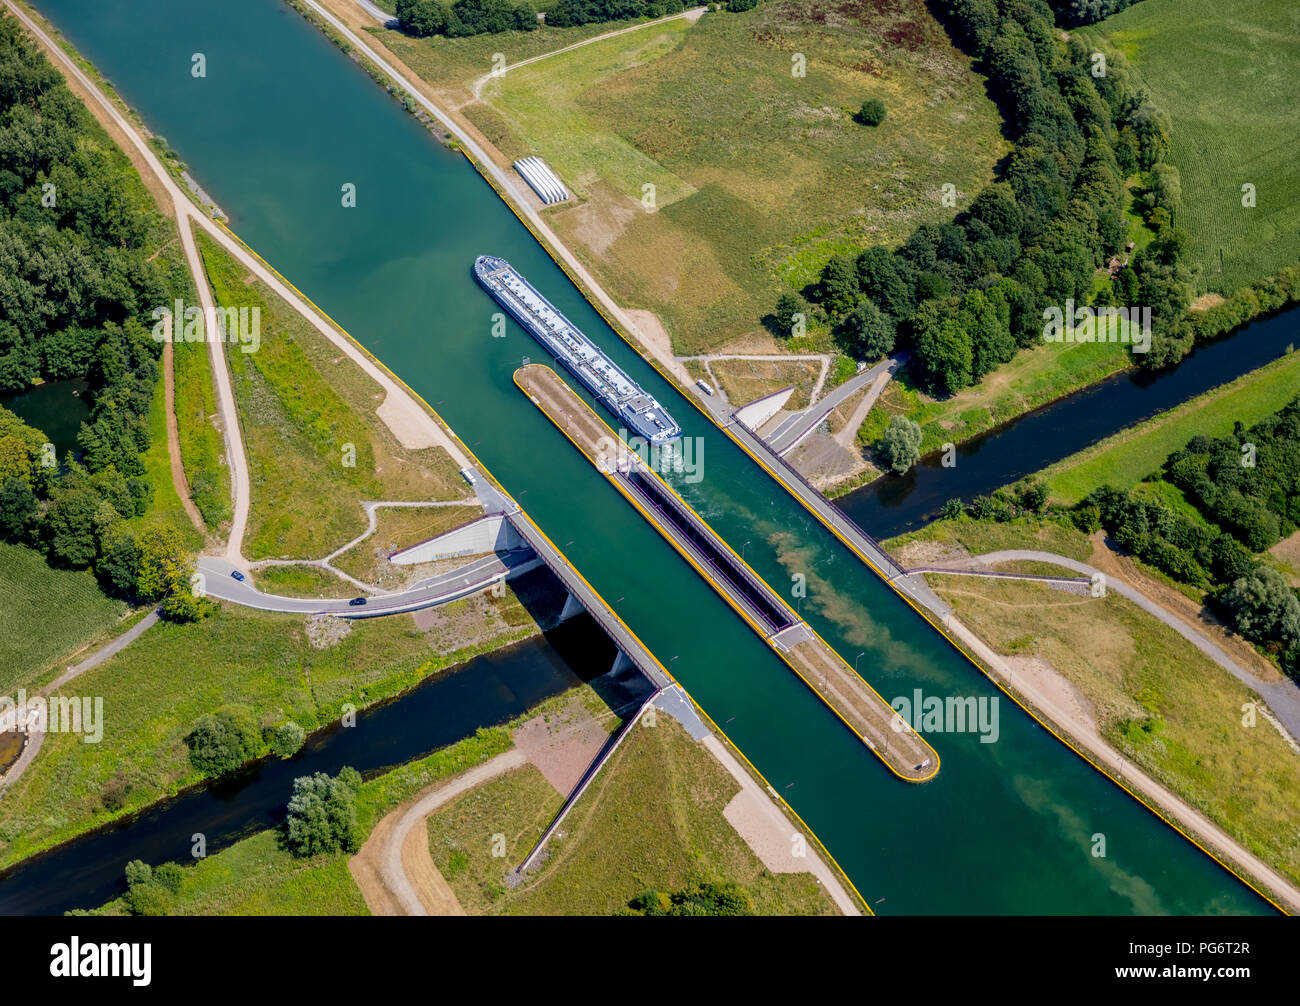 Pont-canal, pont de l'eau, avec la traversée du canal de la rivière Lippe, lippe river, des bateaux de navigation intérieure, d'un cargo, la navigation intérieure, la construction d'un pont, la date Banque D'Images